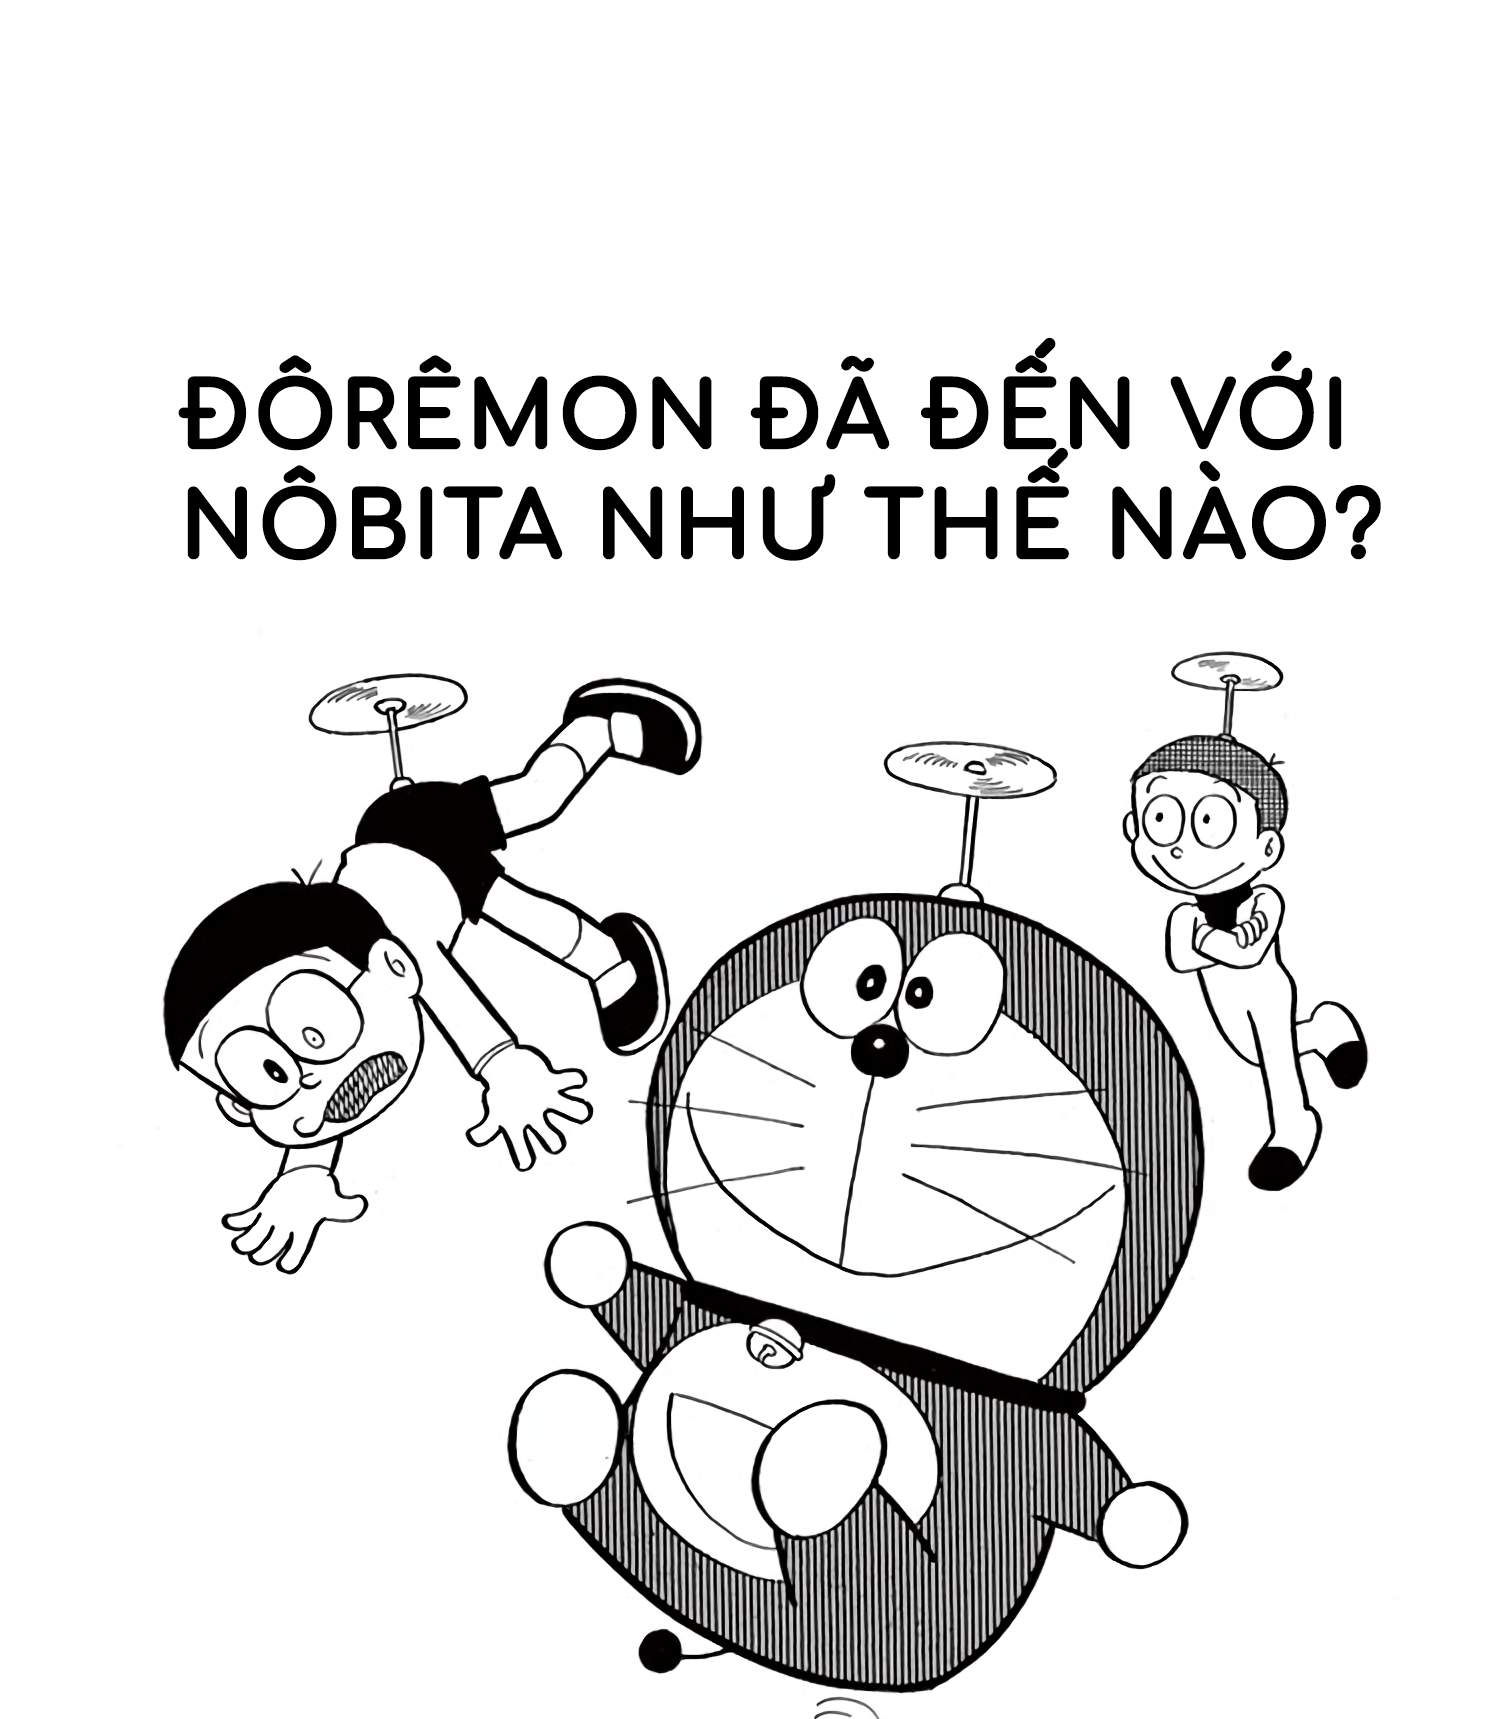 Người bạn đến từ tương lai: Bạn đã bao giờ mơ ước có một người bạn đến từ tương lai chưa? Với Doraemon, điều đó không phải là ước mơ. Nhấn play ngay để thấy cậu bạn mèo máy thông minh này đưa đến những giá trị đích thực cho mối quan hệ bạn bè của chúng ta.